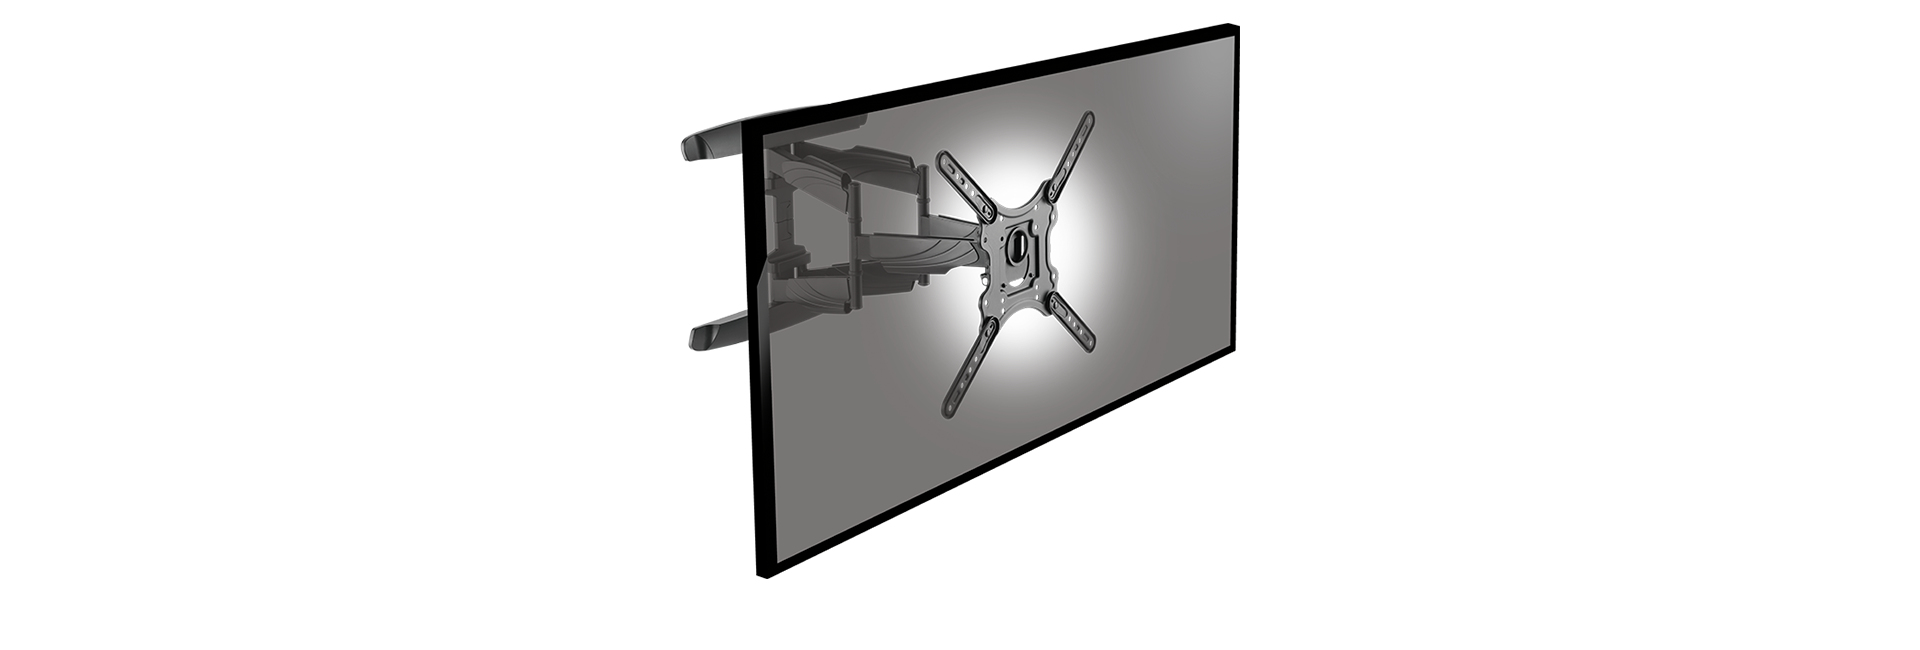 ICY BOX ICY BOX IB-TV1001-W - Klammer - für Flachbildschirm - Kunststoff, Stahl, Aluminiumlegierung - Schwarz - Bildschirmgröße: 58-165 cm (23"-65")